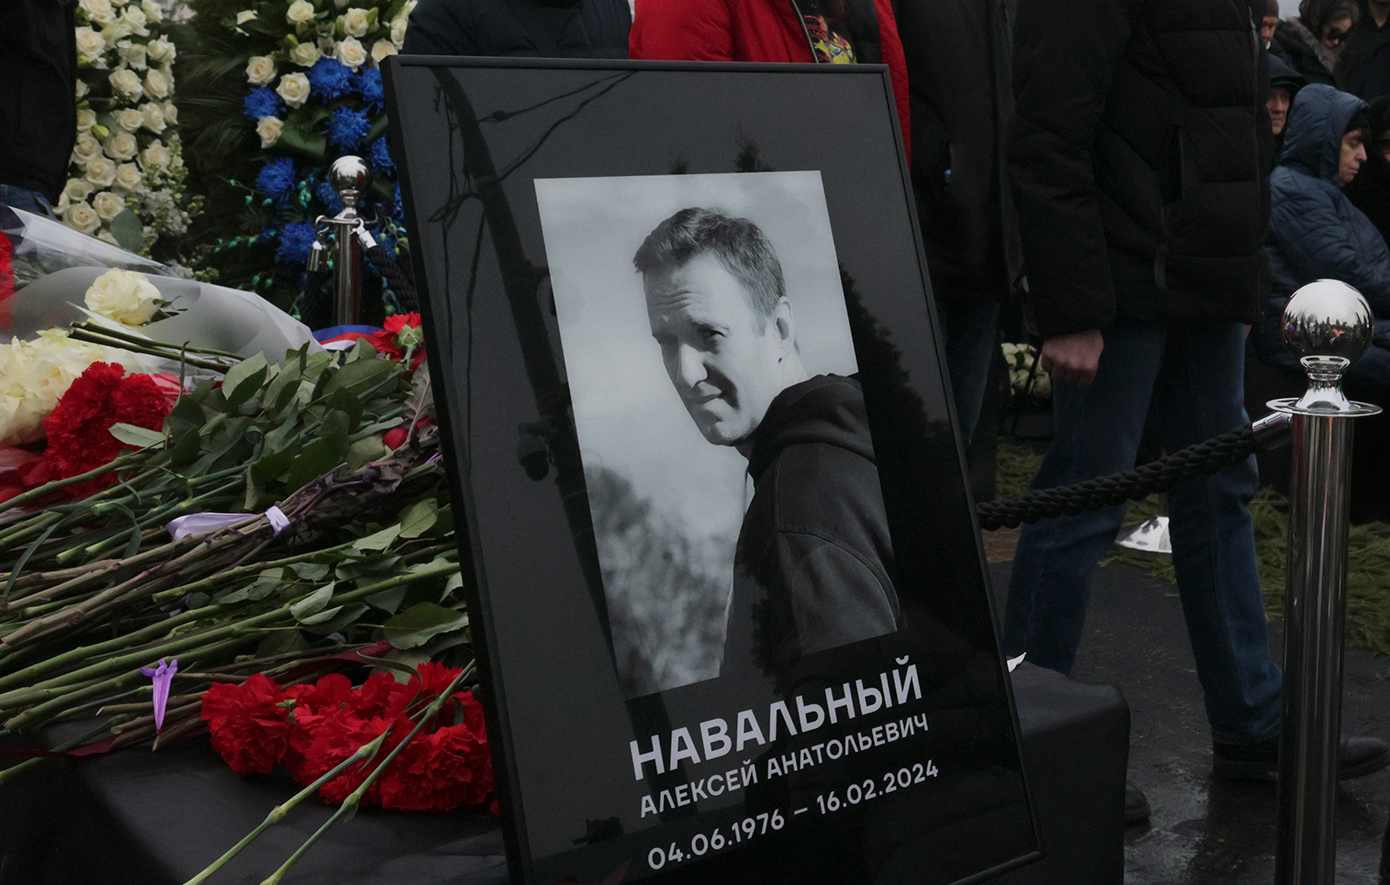 Υπό δρακόντεια μέτρα ασφαλείας η κηδεία του Αλεξέι Ναβάλνι: Πώς οι Ρώσοι τίμησαν τη μνήμη του